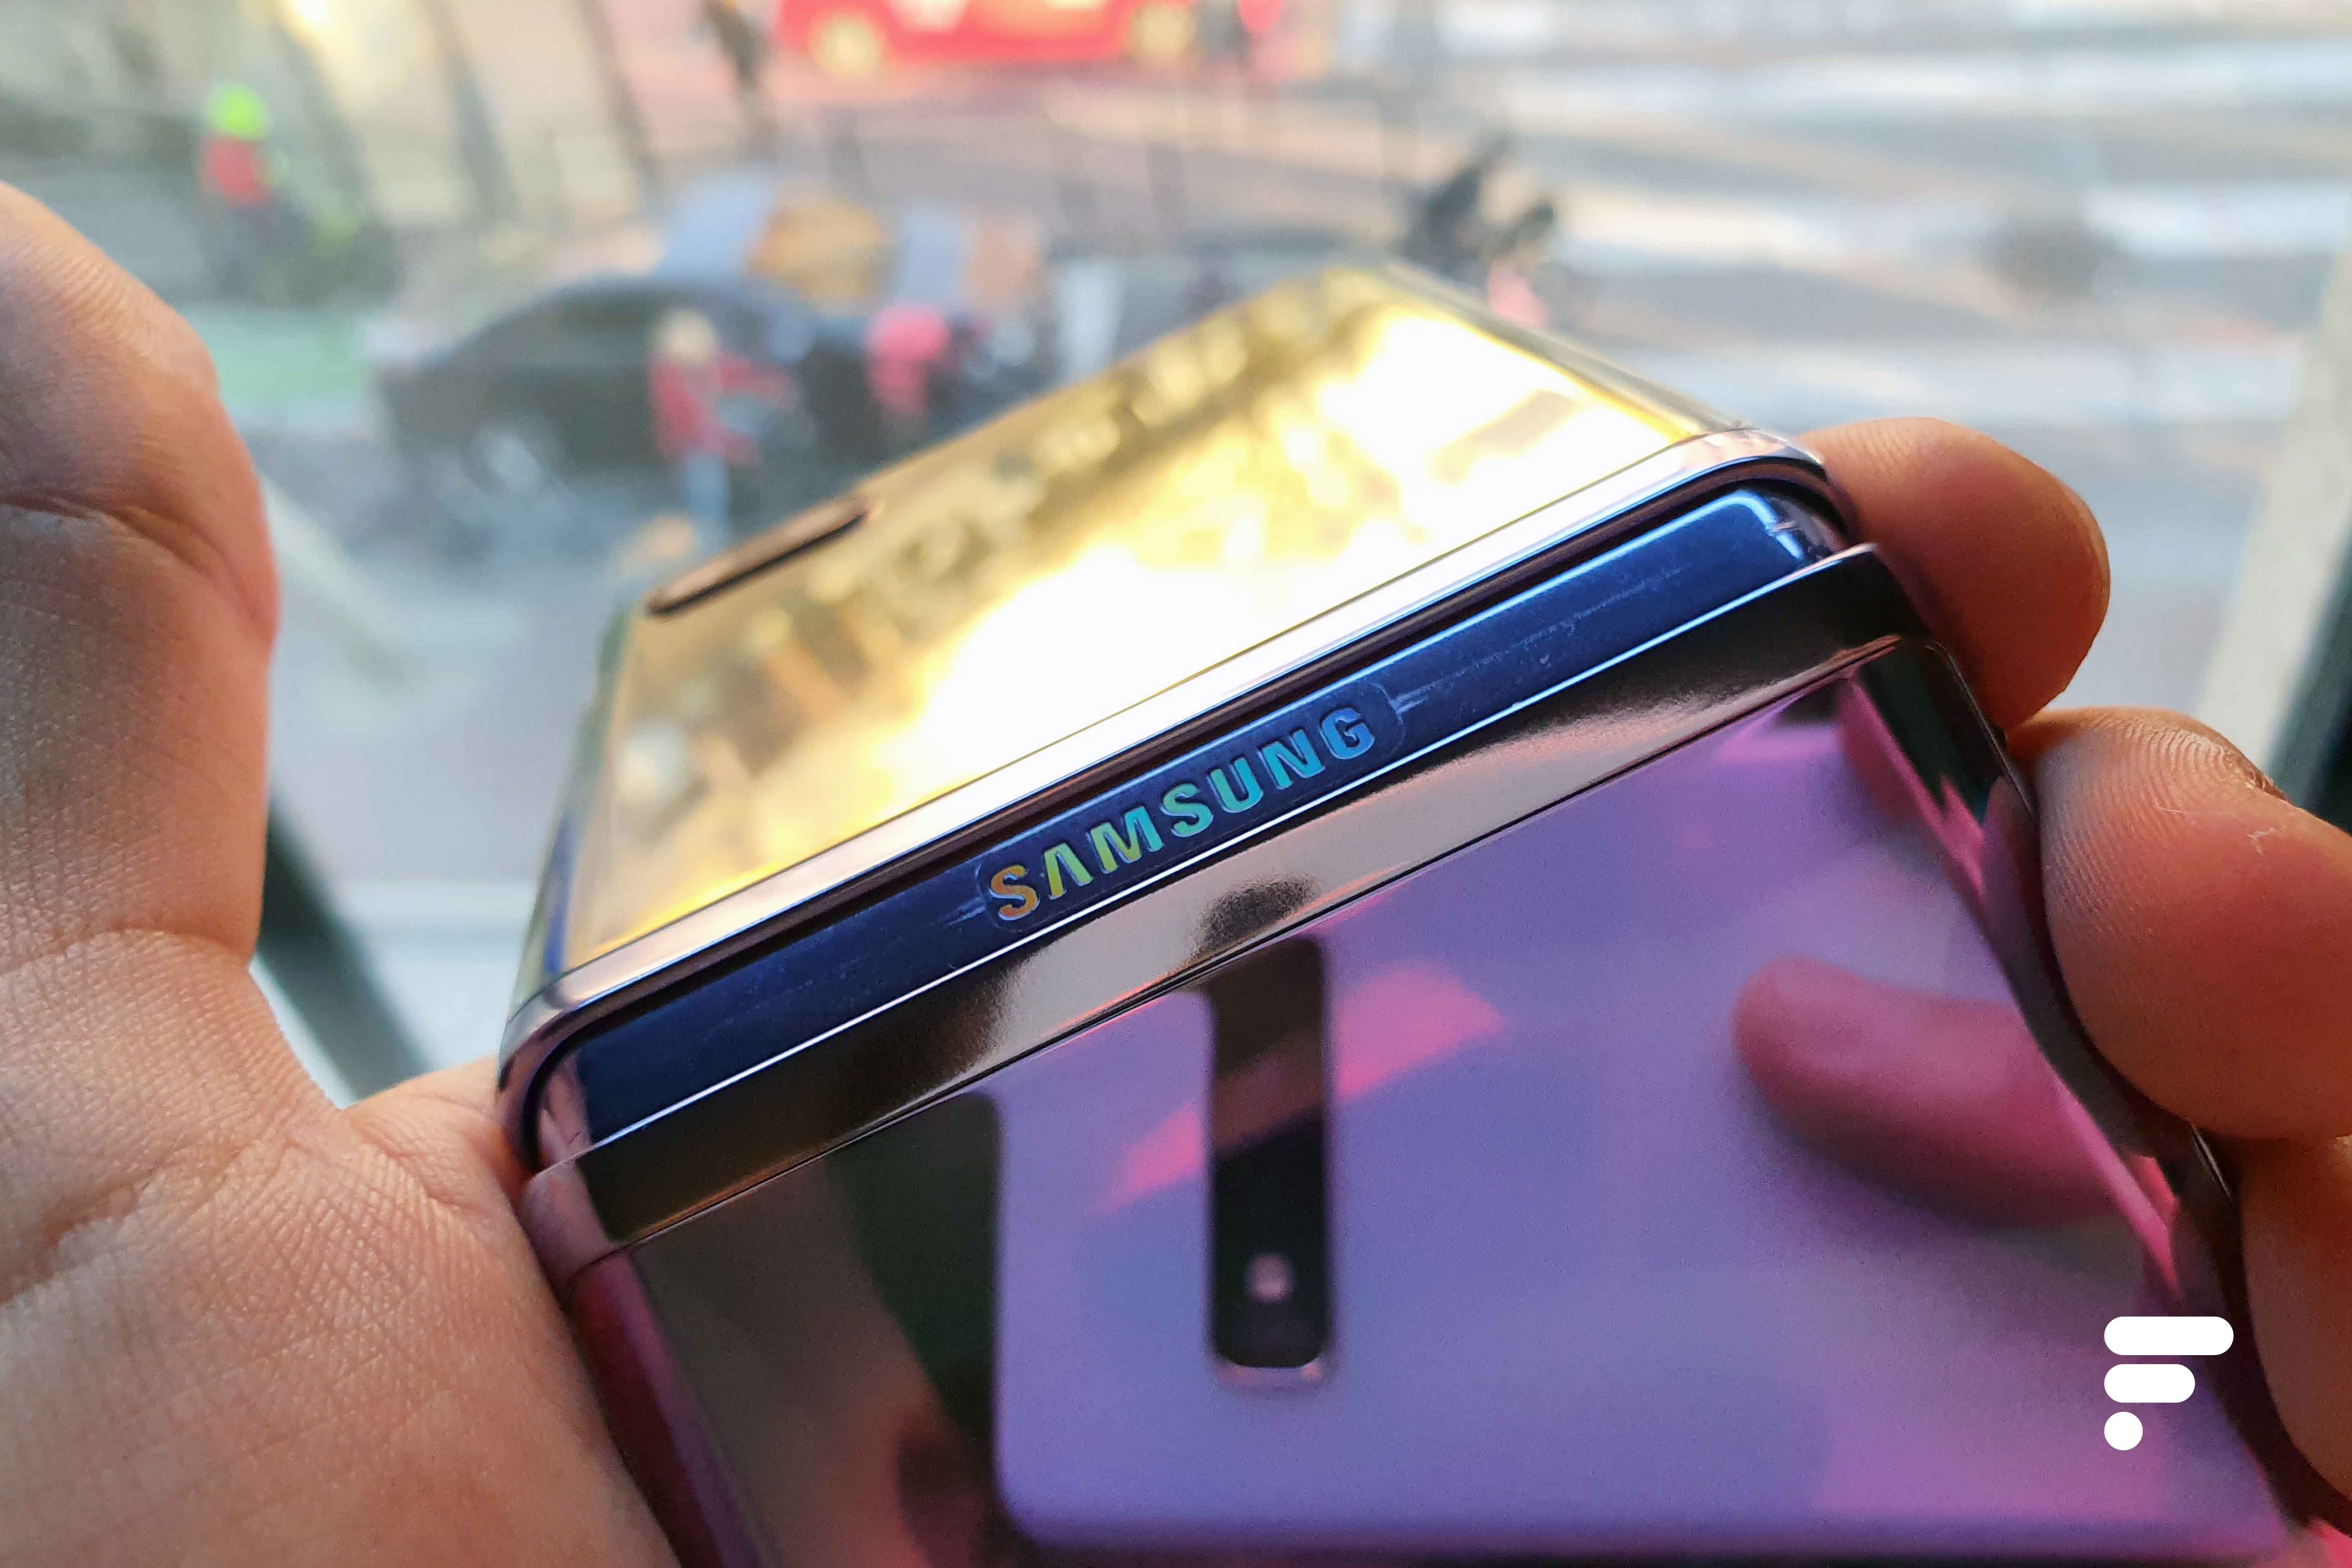 Test du Galaxy Z Flip 3 : que vaut le smartphone pliable de